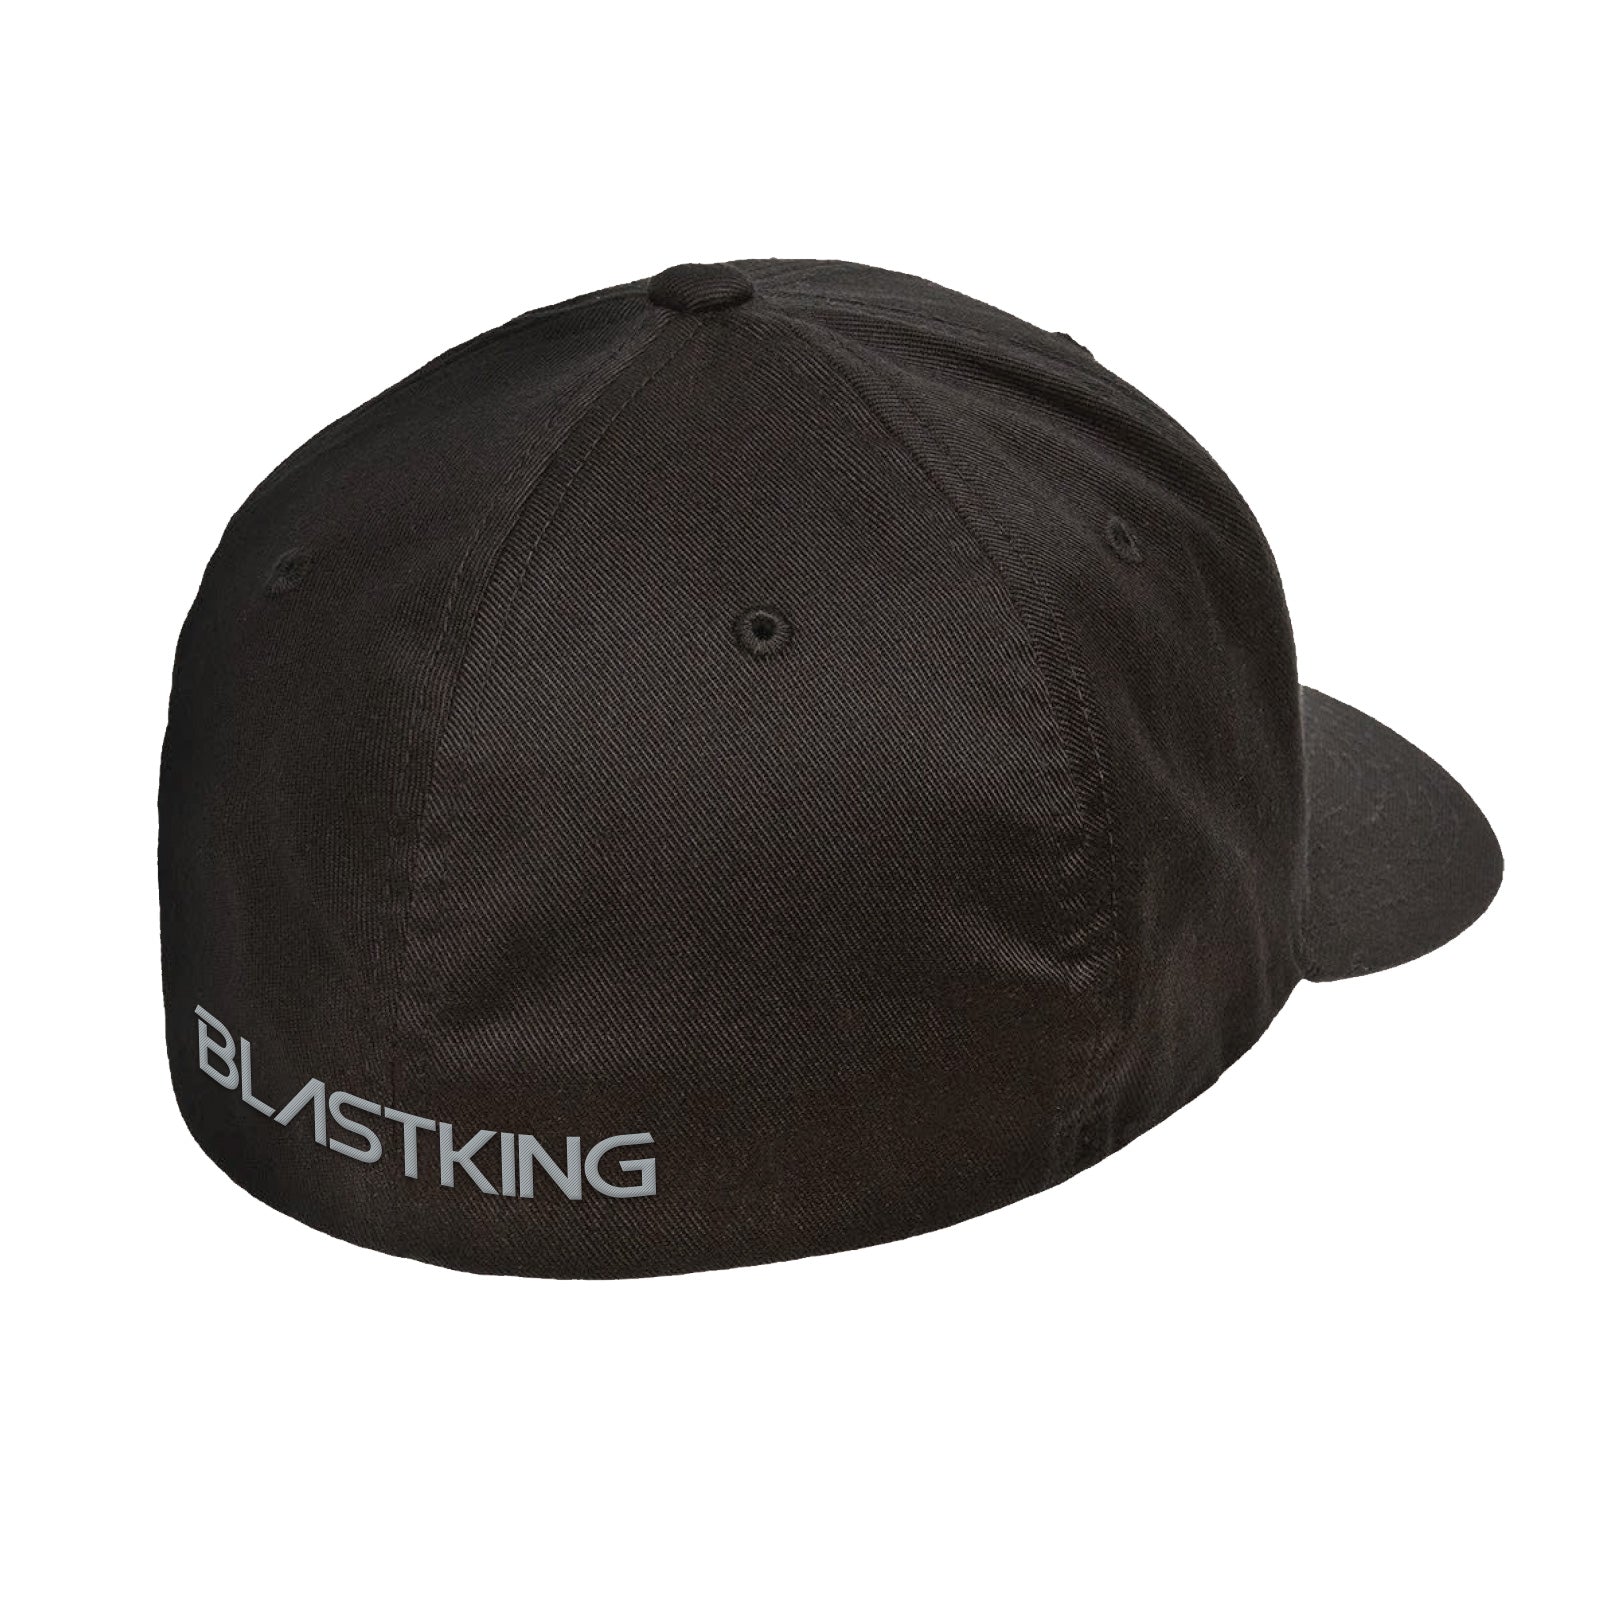 Blastking Hat